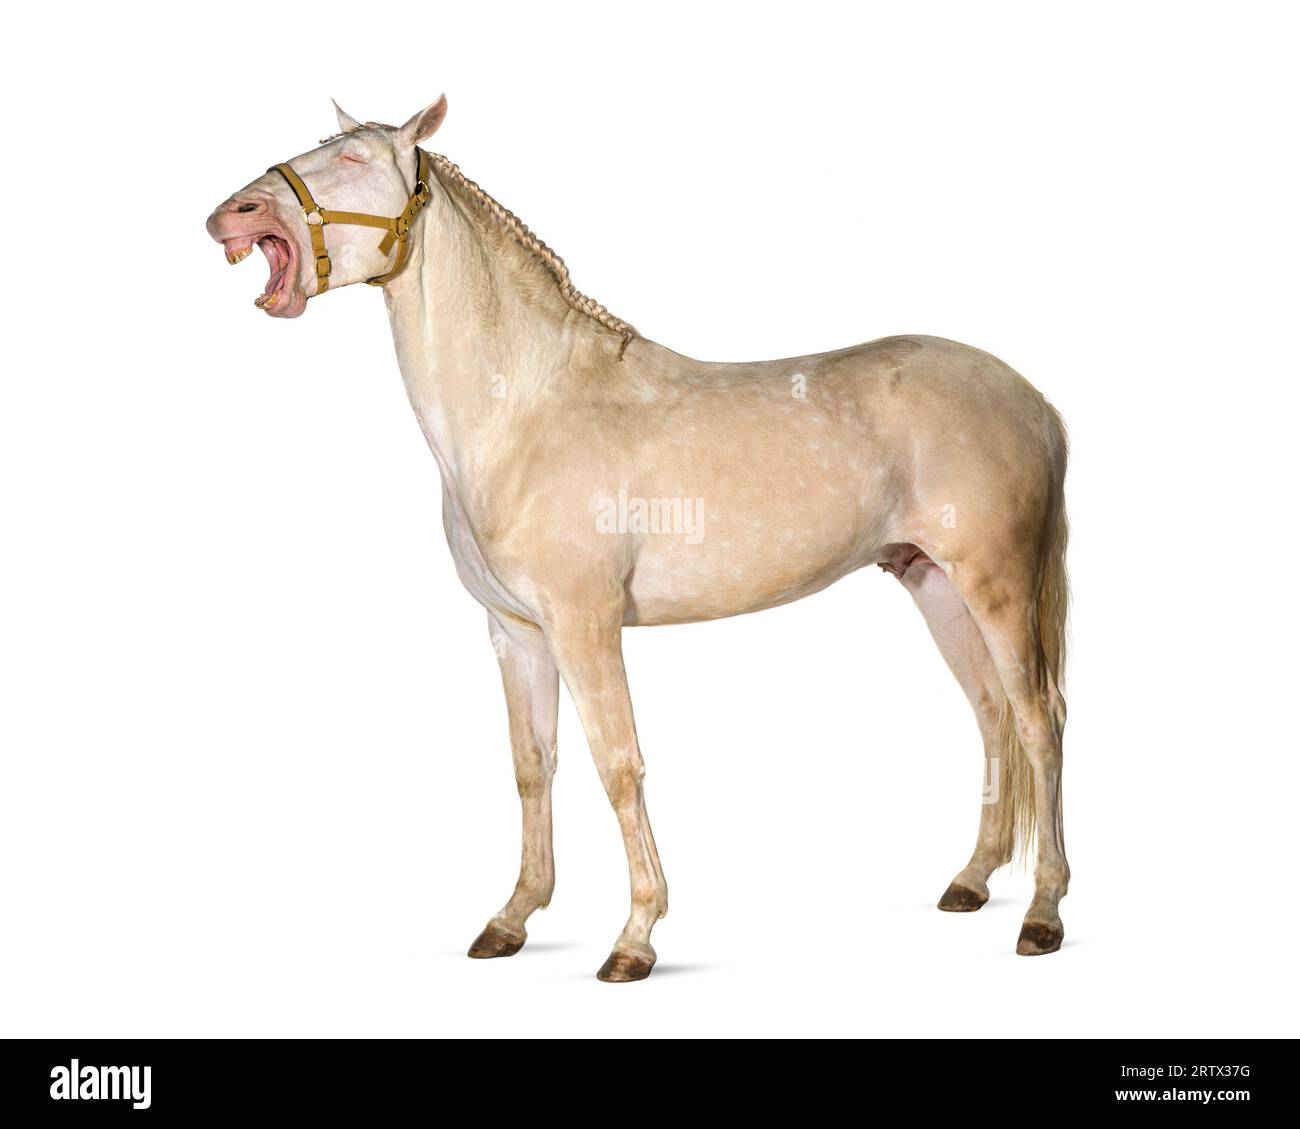 Pferd, mit einem Gurtzeug, weit geöffnetem Mund mit Zunge und Zähnen, sieht aus, als würde er laut lachen, isoliert auf weiß Stockfoto